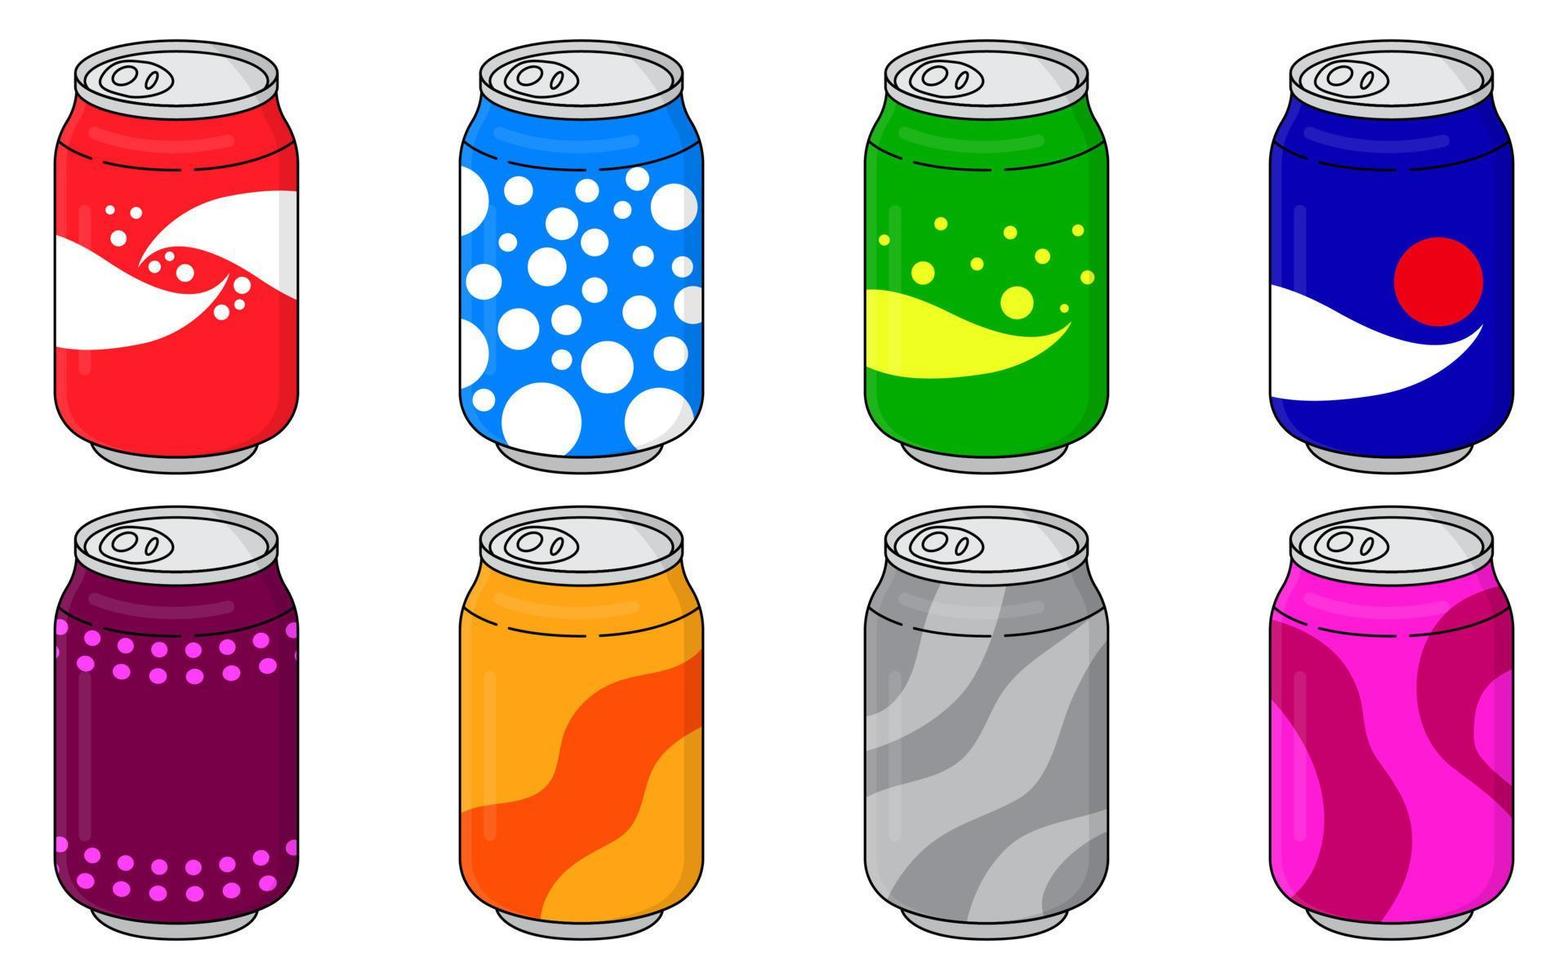 refrescos en latas de aluminio de colores establecer iconos aislados sobre fondo blanco. signo de refrescos. agua carbonatada sin alcohol con diferentes sabores. bebidas en envases de colores. ilustración vectorial vector